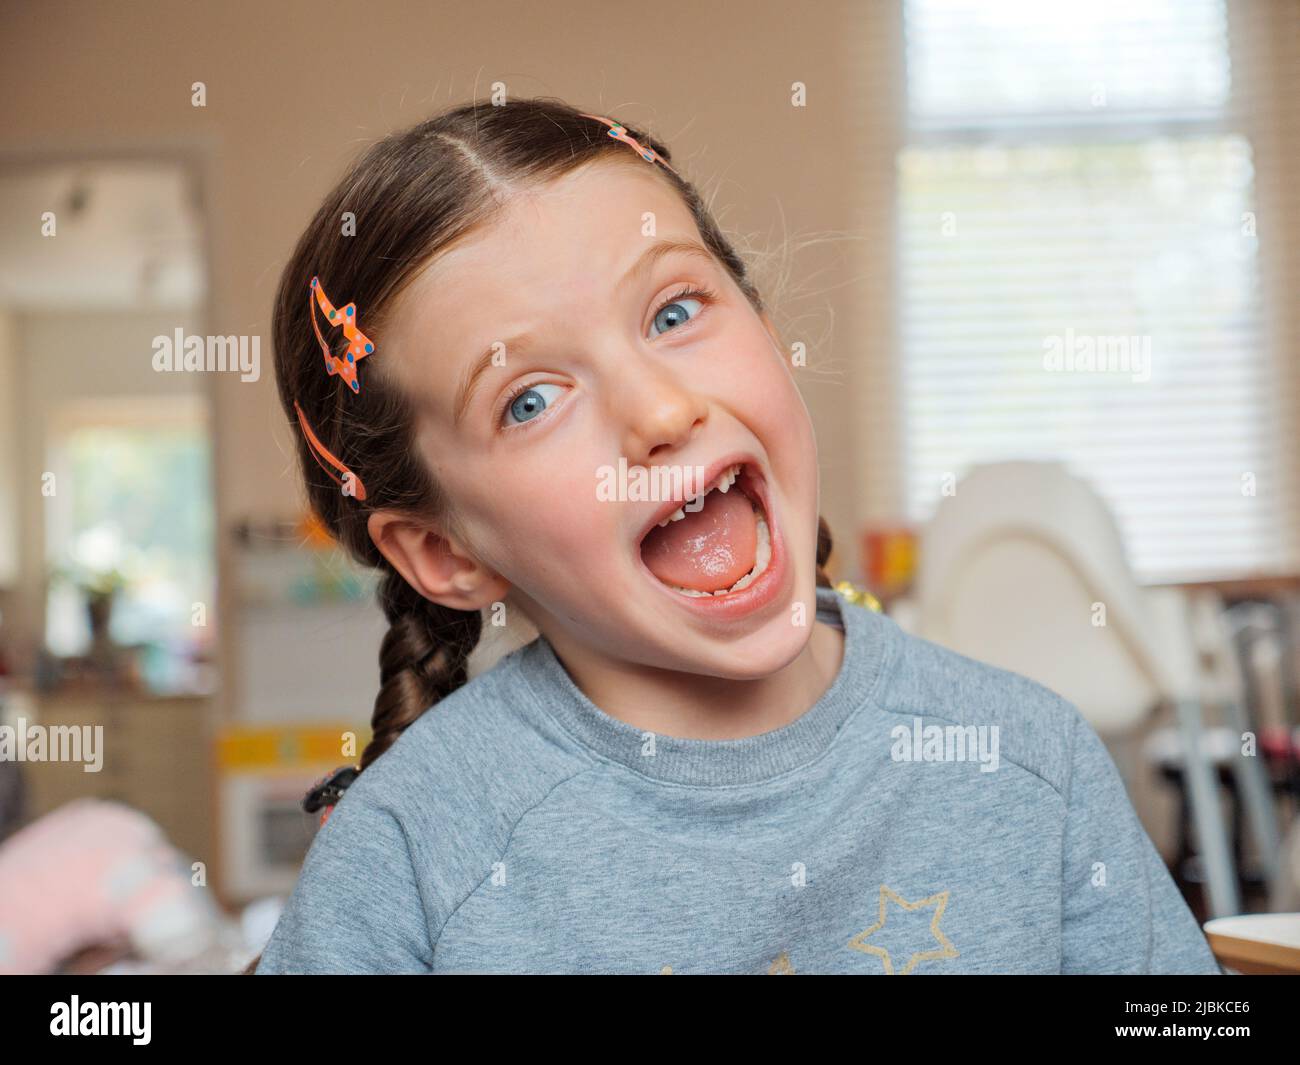 Retrato de una chica feliz sonriente de siete años que ha perdido sus dientes delanteros del bebé que se han caído Foto de stock